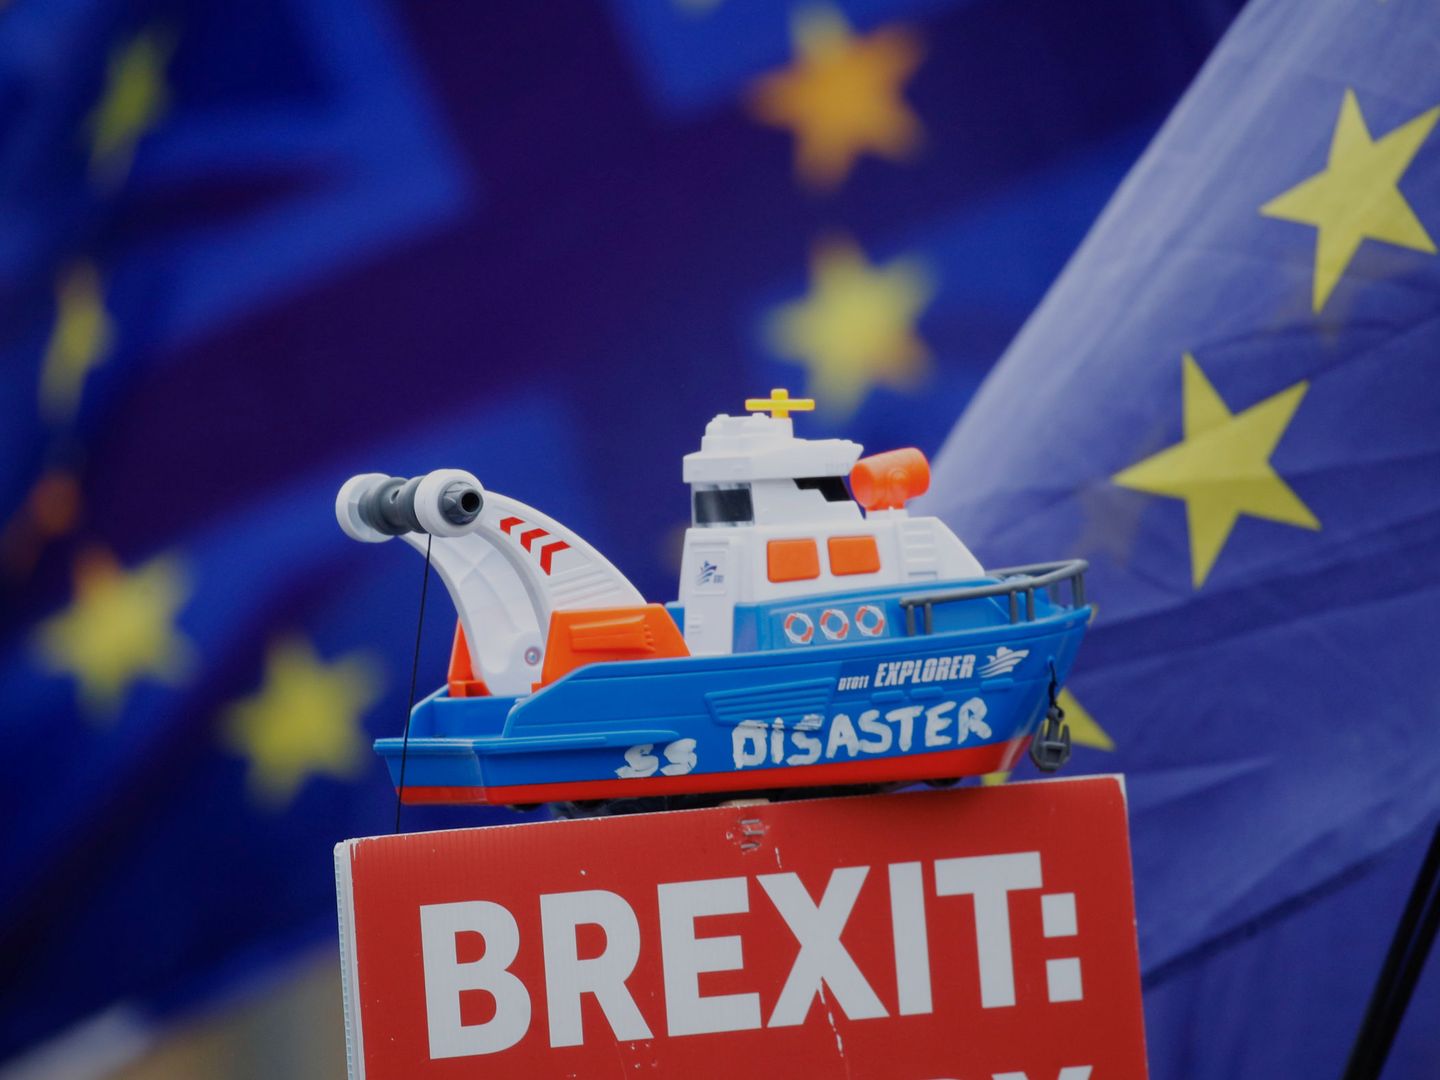 Un barco de juguete llamado ‘SS Disaster’ ('SS Desastre') en lo alto de una pancarta durante una manifestación anti-Brexit en Londres, el 7 de enero de 2019. (Reuters)